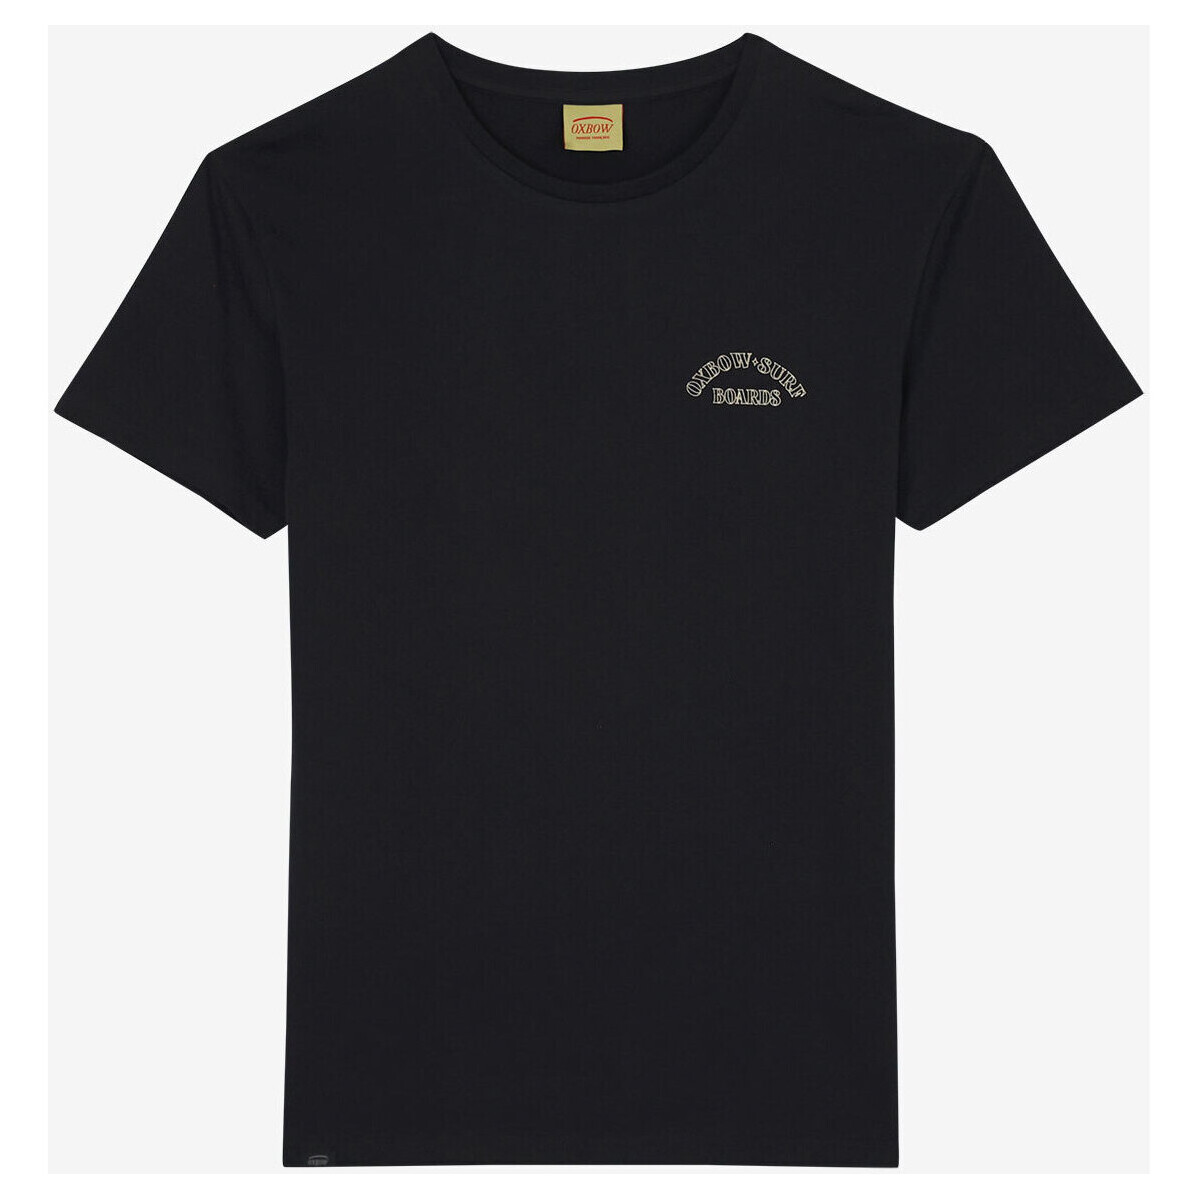 Vêtements Homme T-shirts manches courtes Oxbow Tee shirt manches courtes graphique TOMANA Noir